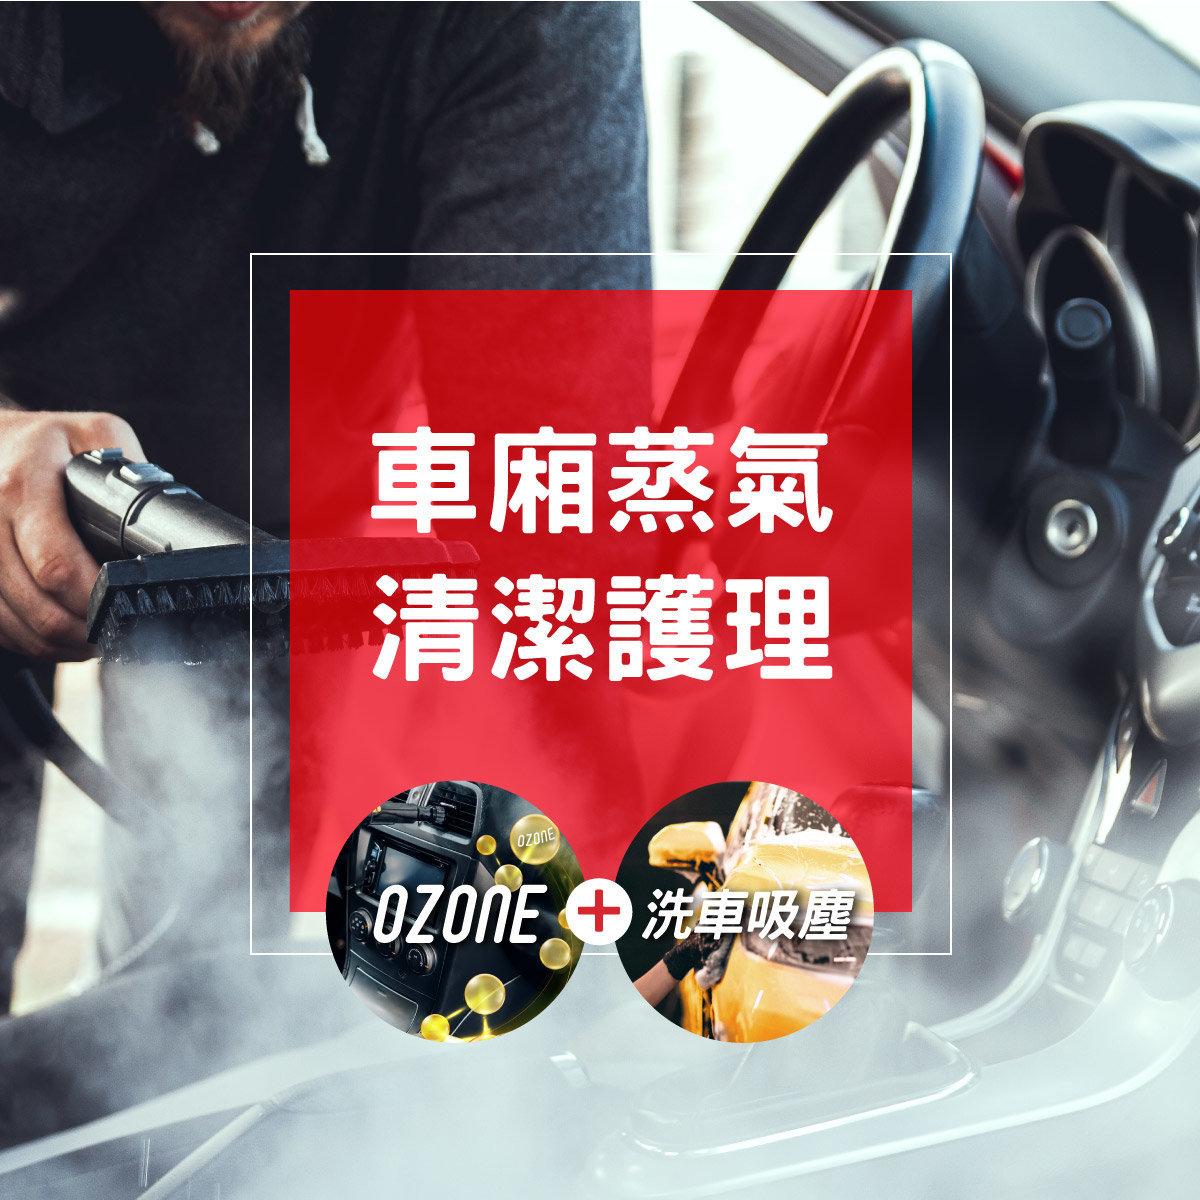 1 次汽車美容 - 車廂蒸氣清潔護理 + OZONE車廂空氣淨化 + 洗車吸塵